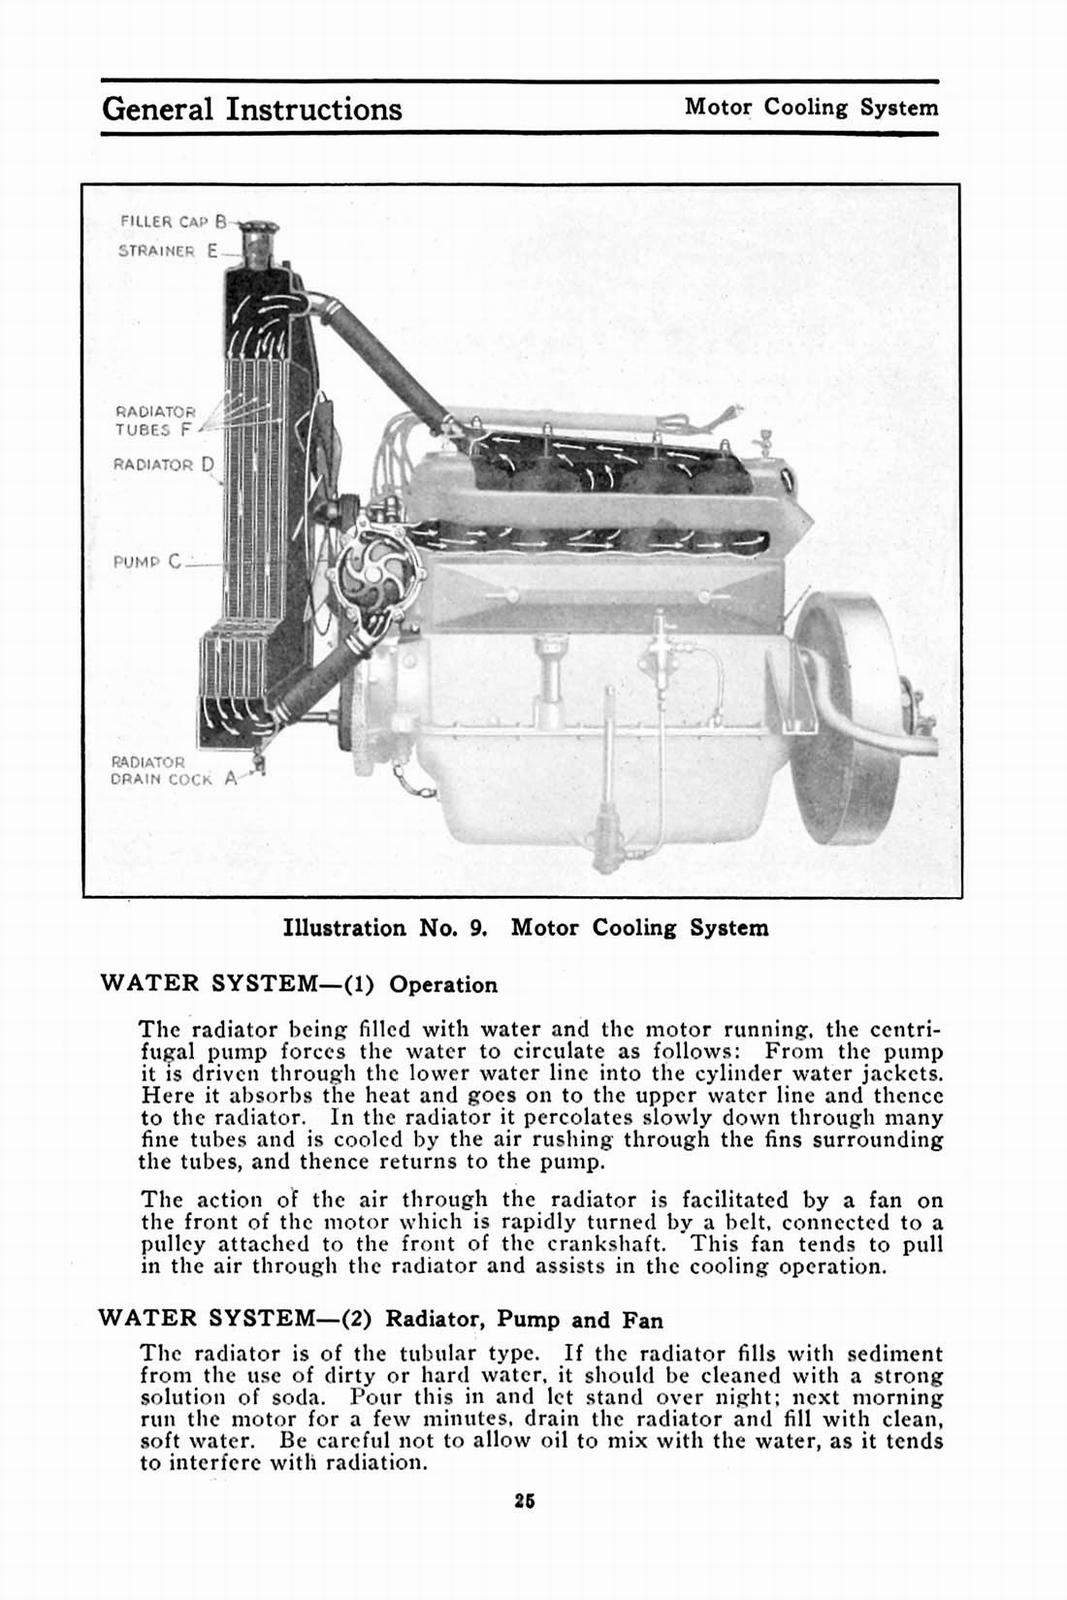 n_1913 Studebaker Model 35 Manual-25.jpg